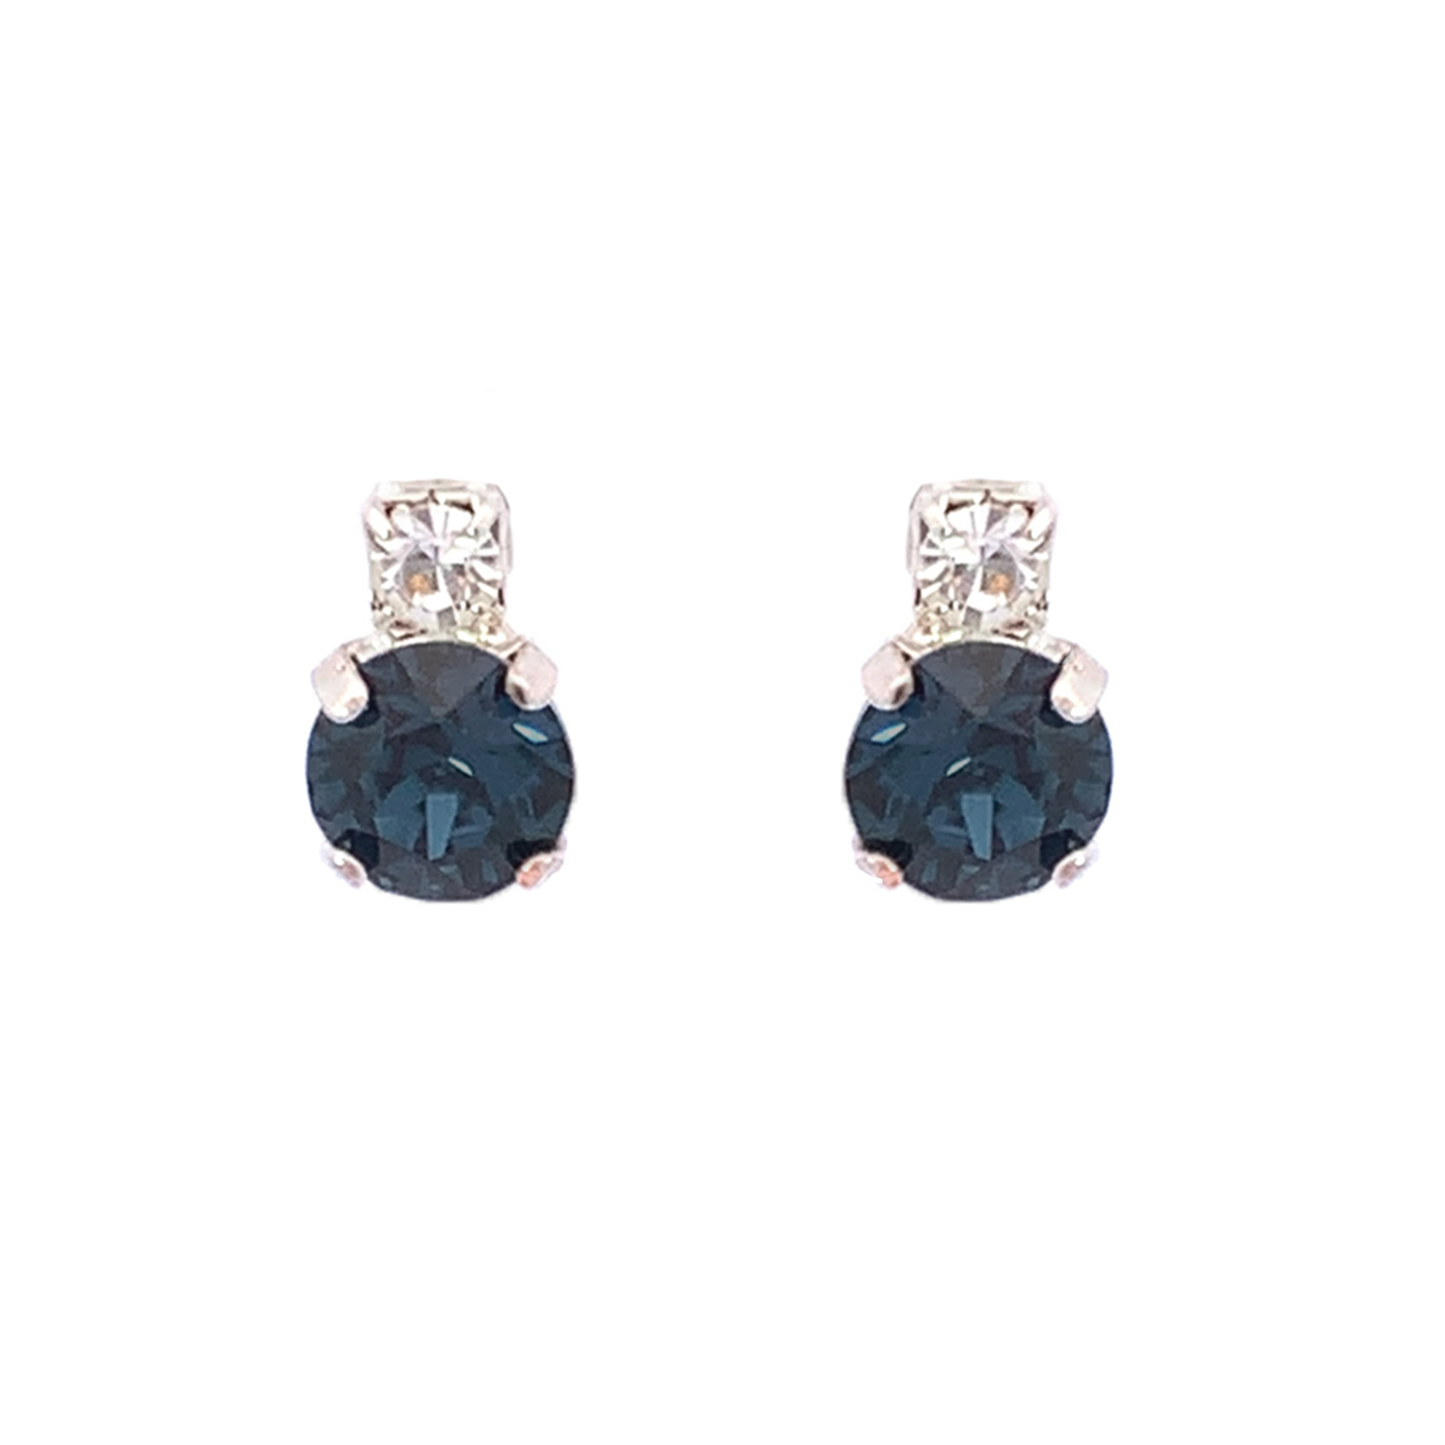 Sapphire stud earrings silver